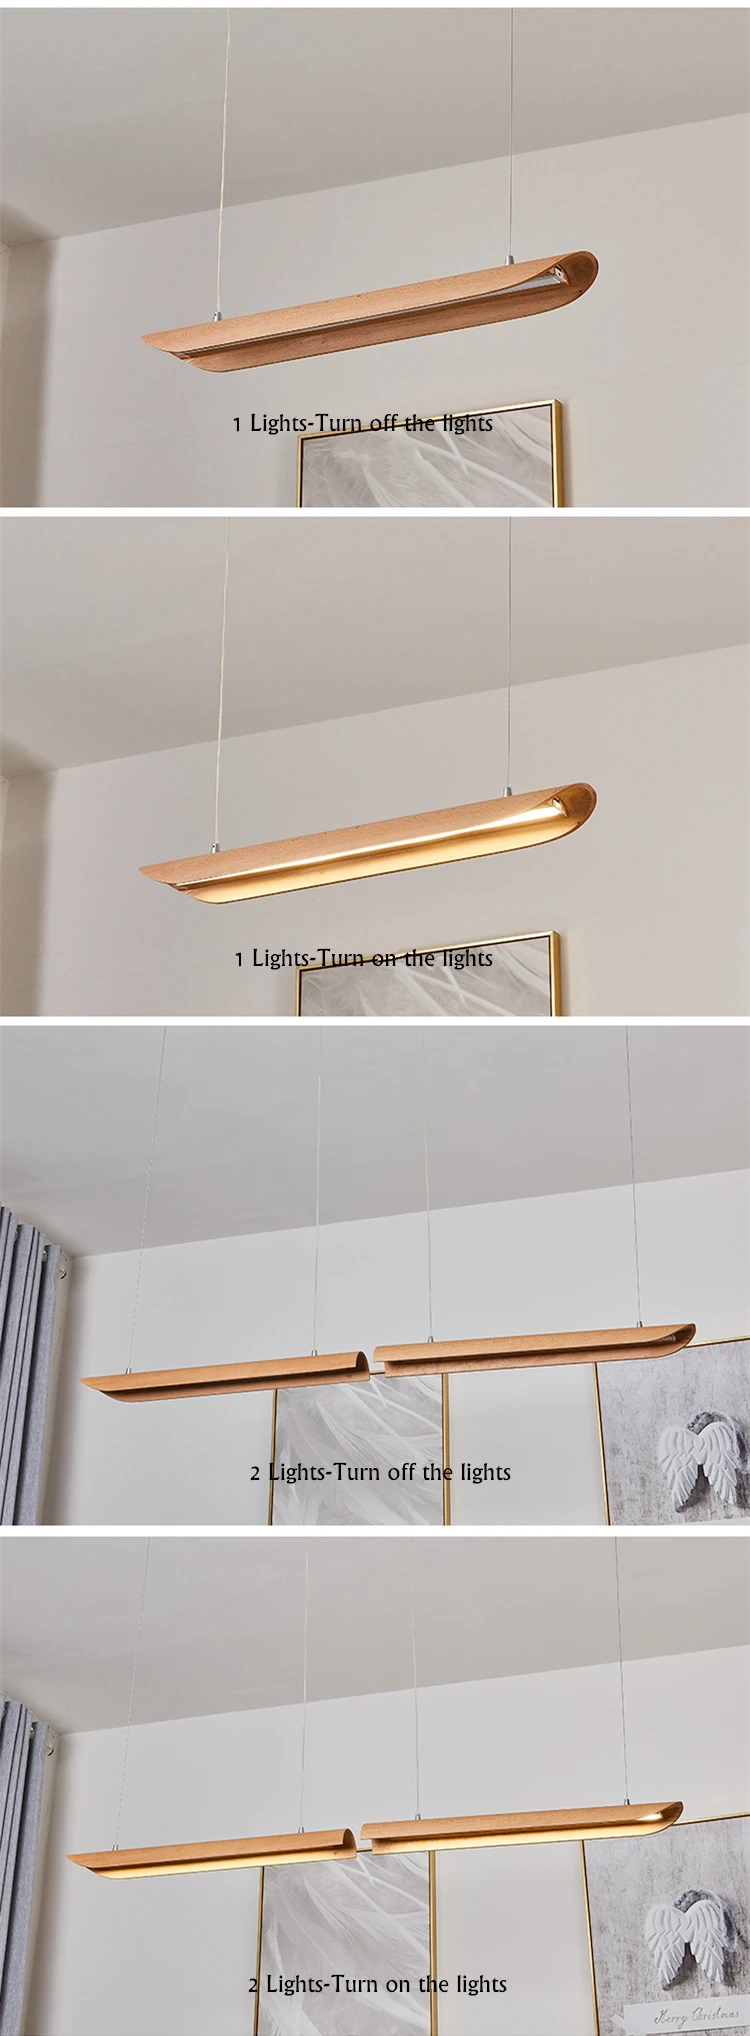 TRAZOS креативные подвесные светильники в скандинавском стиле, современные подвесные светильники, деревянные подвесные светильники для спальни, гостиной, ресторана